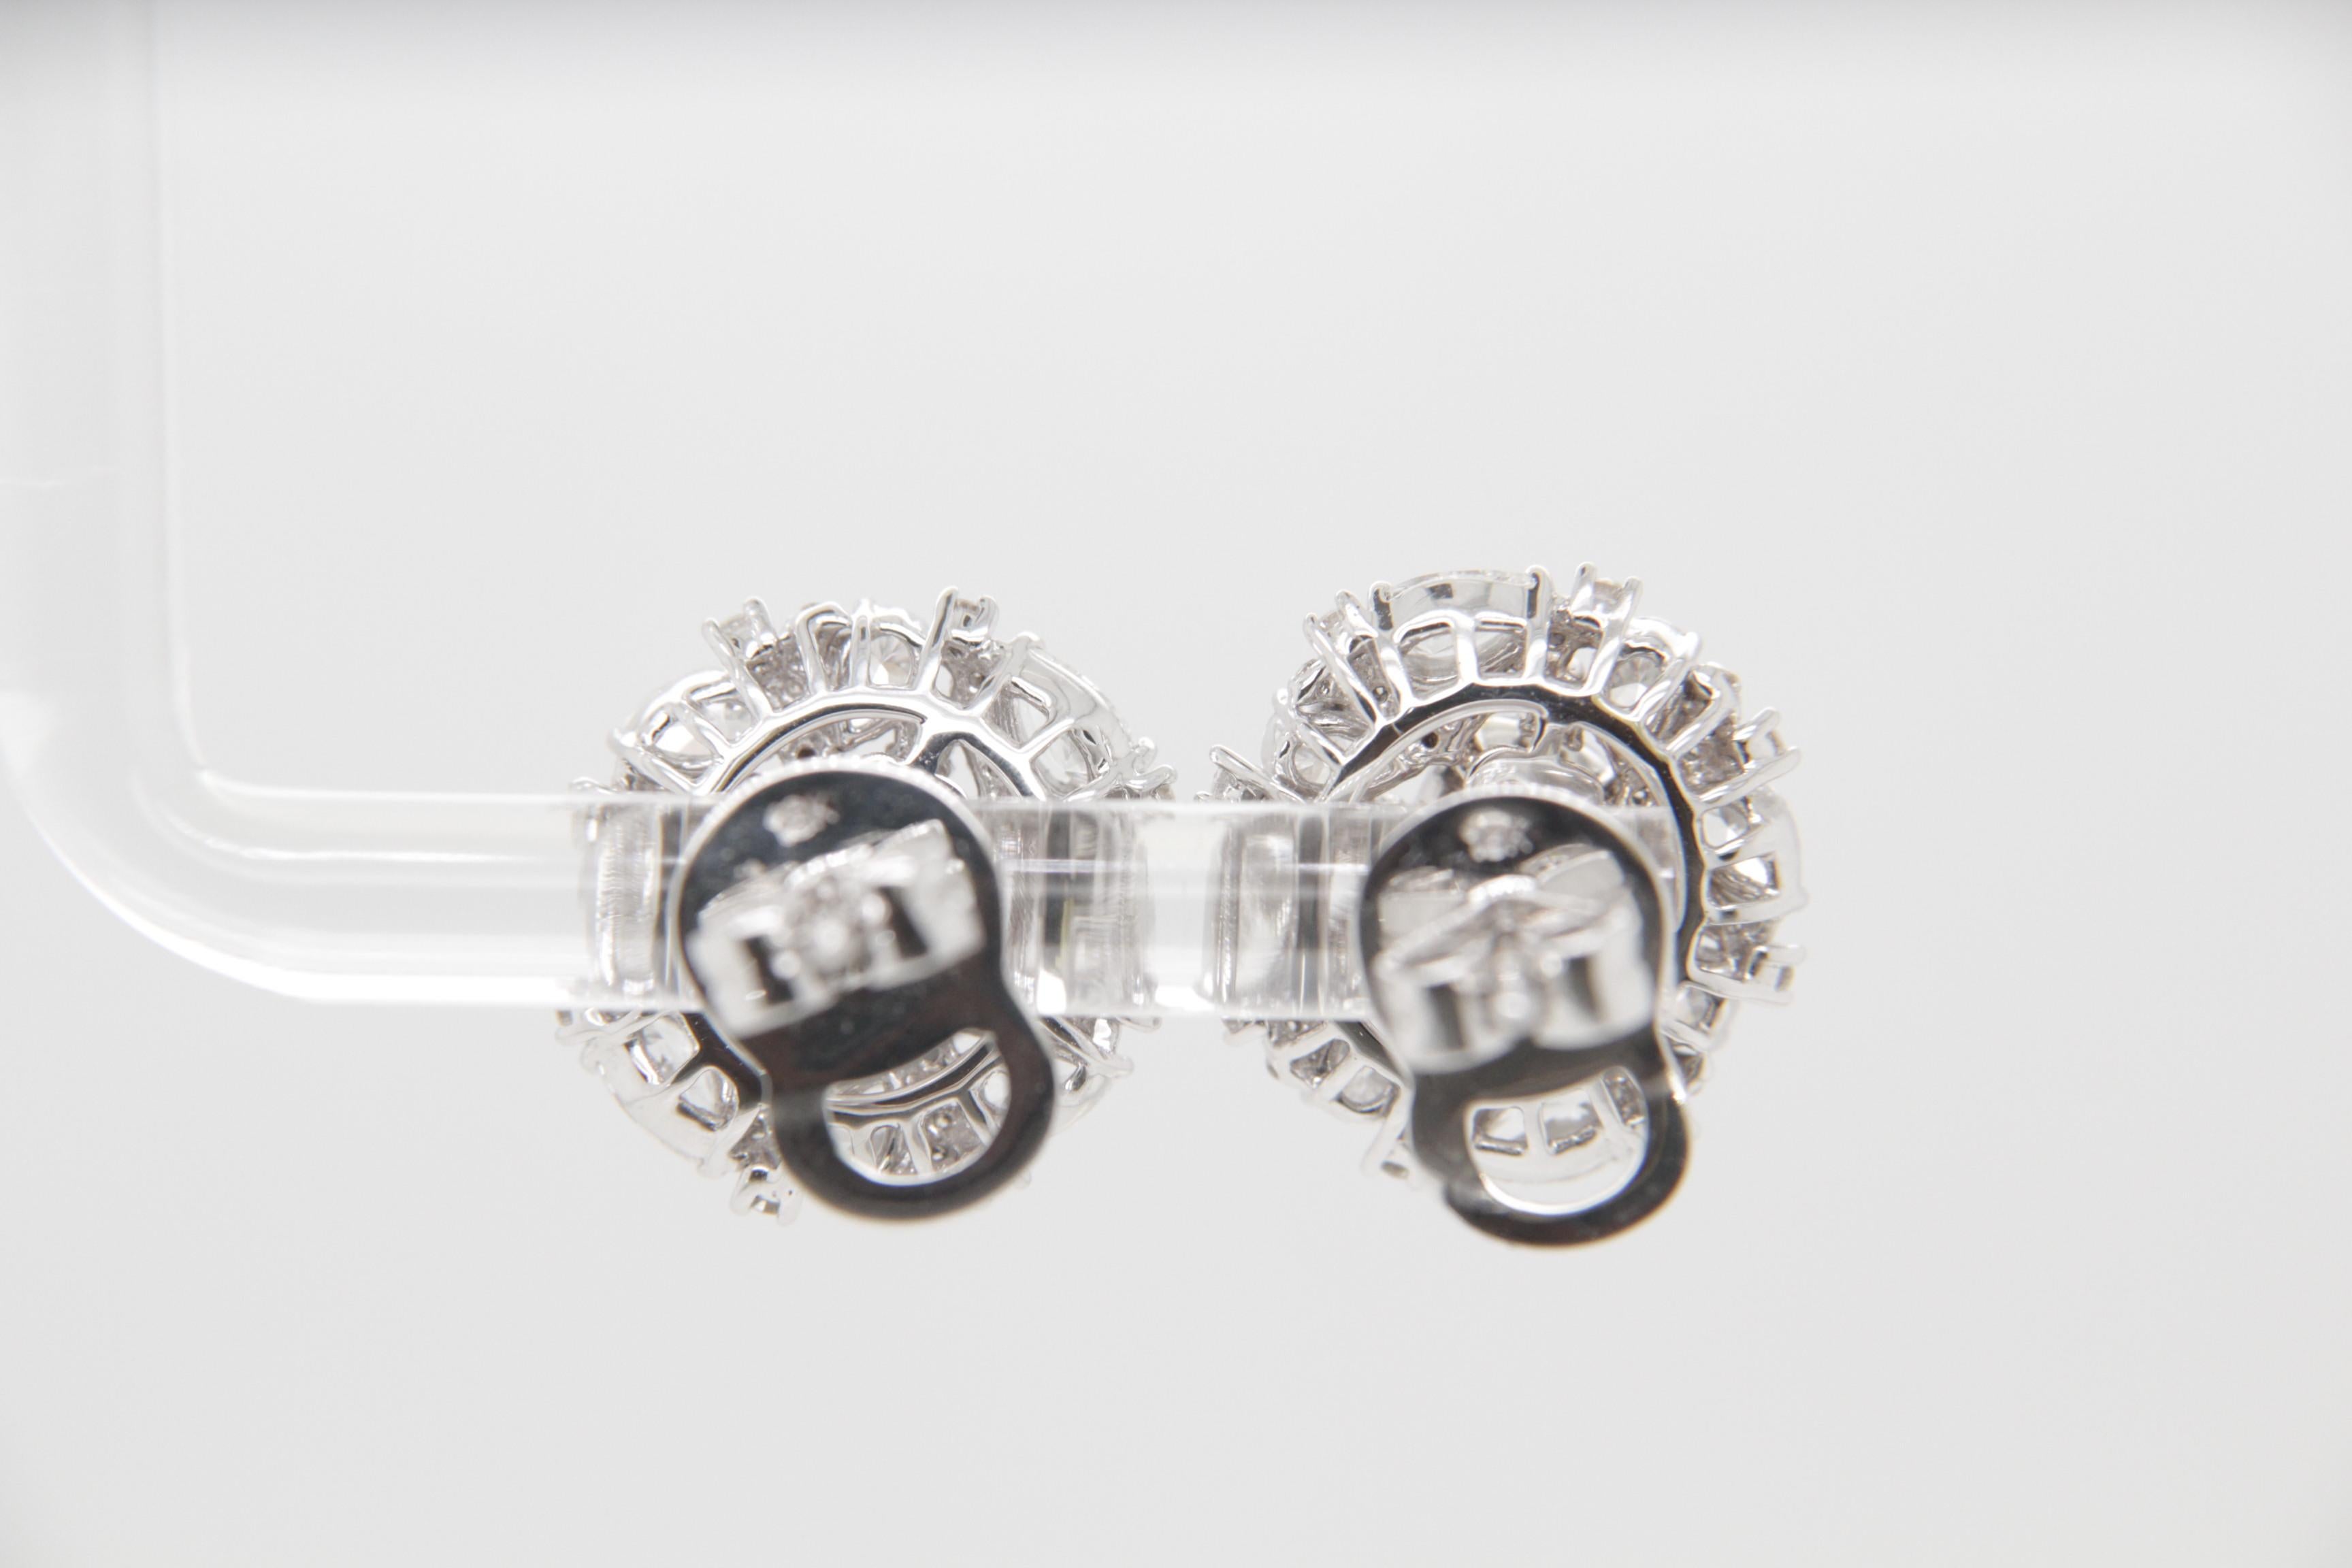 Diese zeitlosen Rubin- und Diamantohrringe von REWA Jewelry sind eine fesselnde Mischung aus klassischen Themen und raffinierter Eleganz - eine Verkörperung des Engagements der Marke für exquisite Handwerkskunst und dauerhafte Schönheit.

Diese